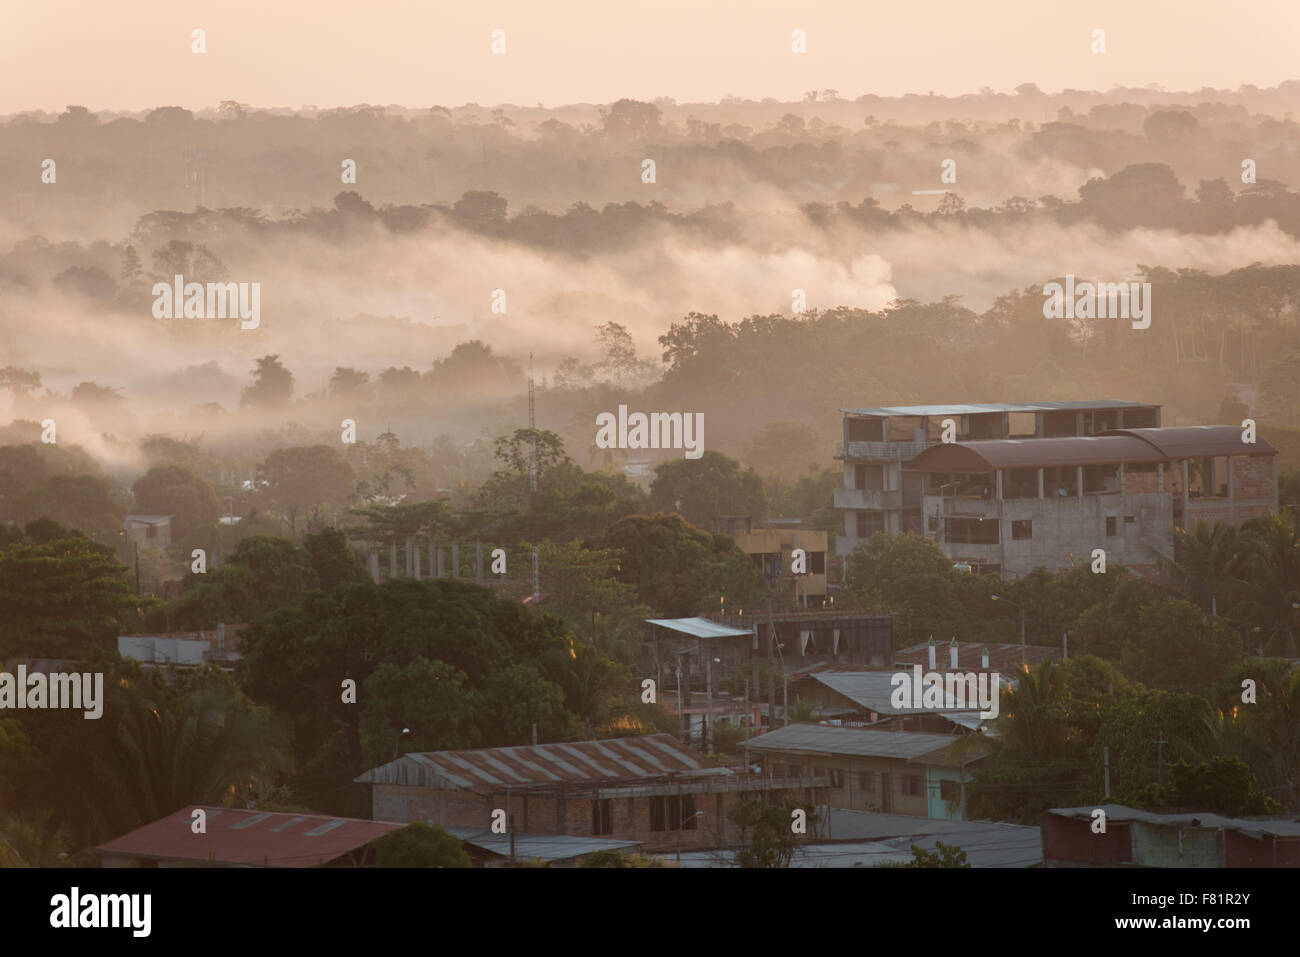 smoke haze from El Niño associated fires in Amazonia 2015, Puerto Maldonado, Madre de Dios, Peru Stock Photo